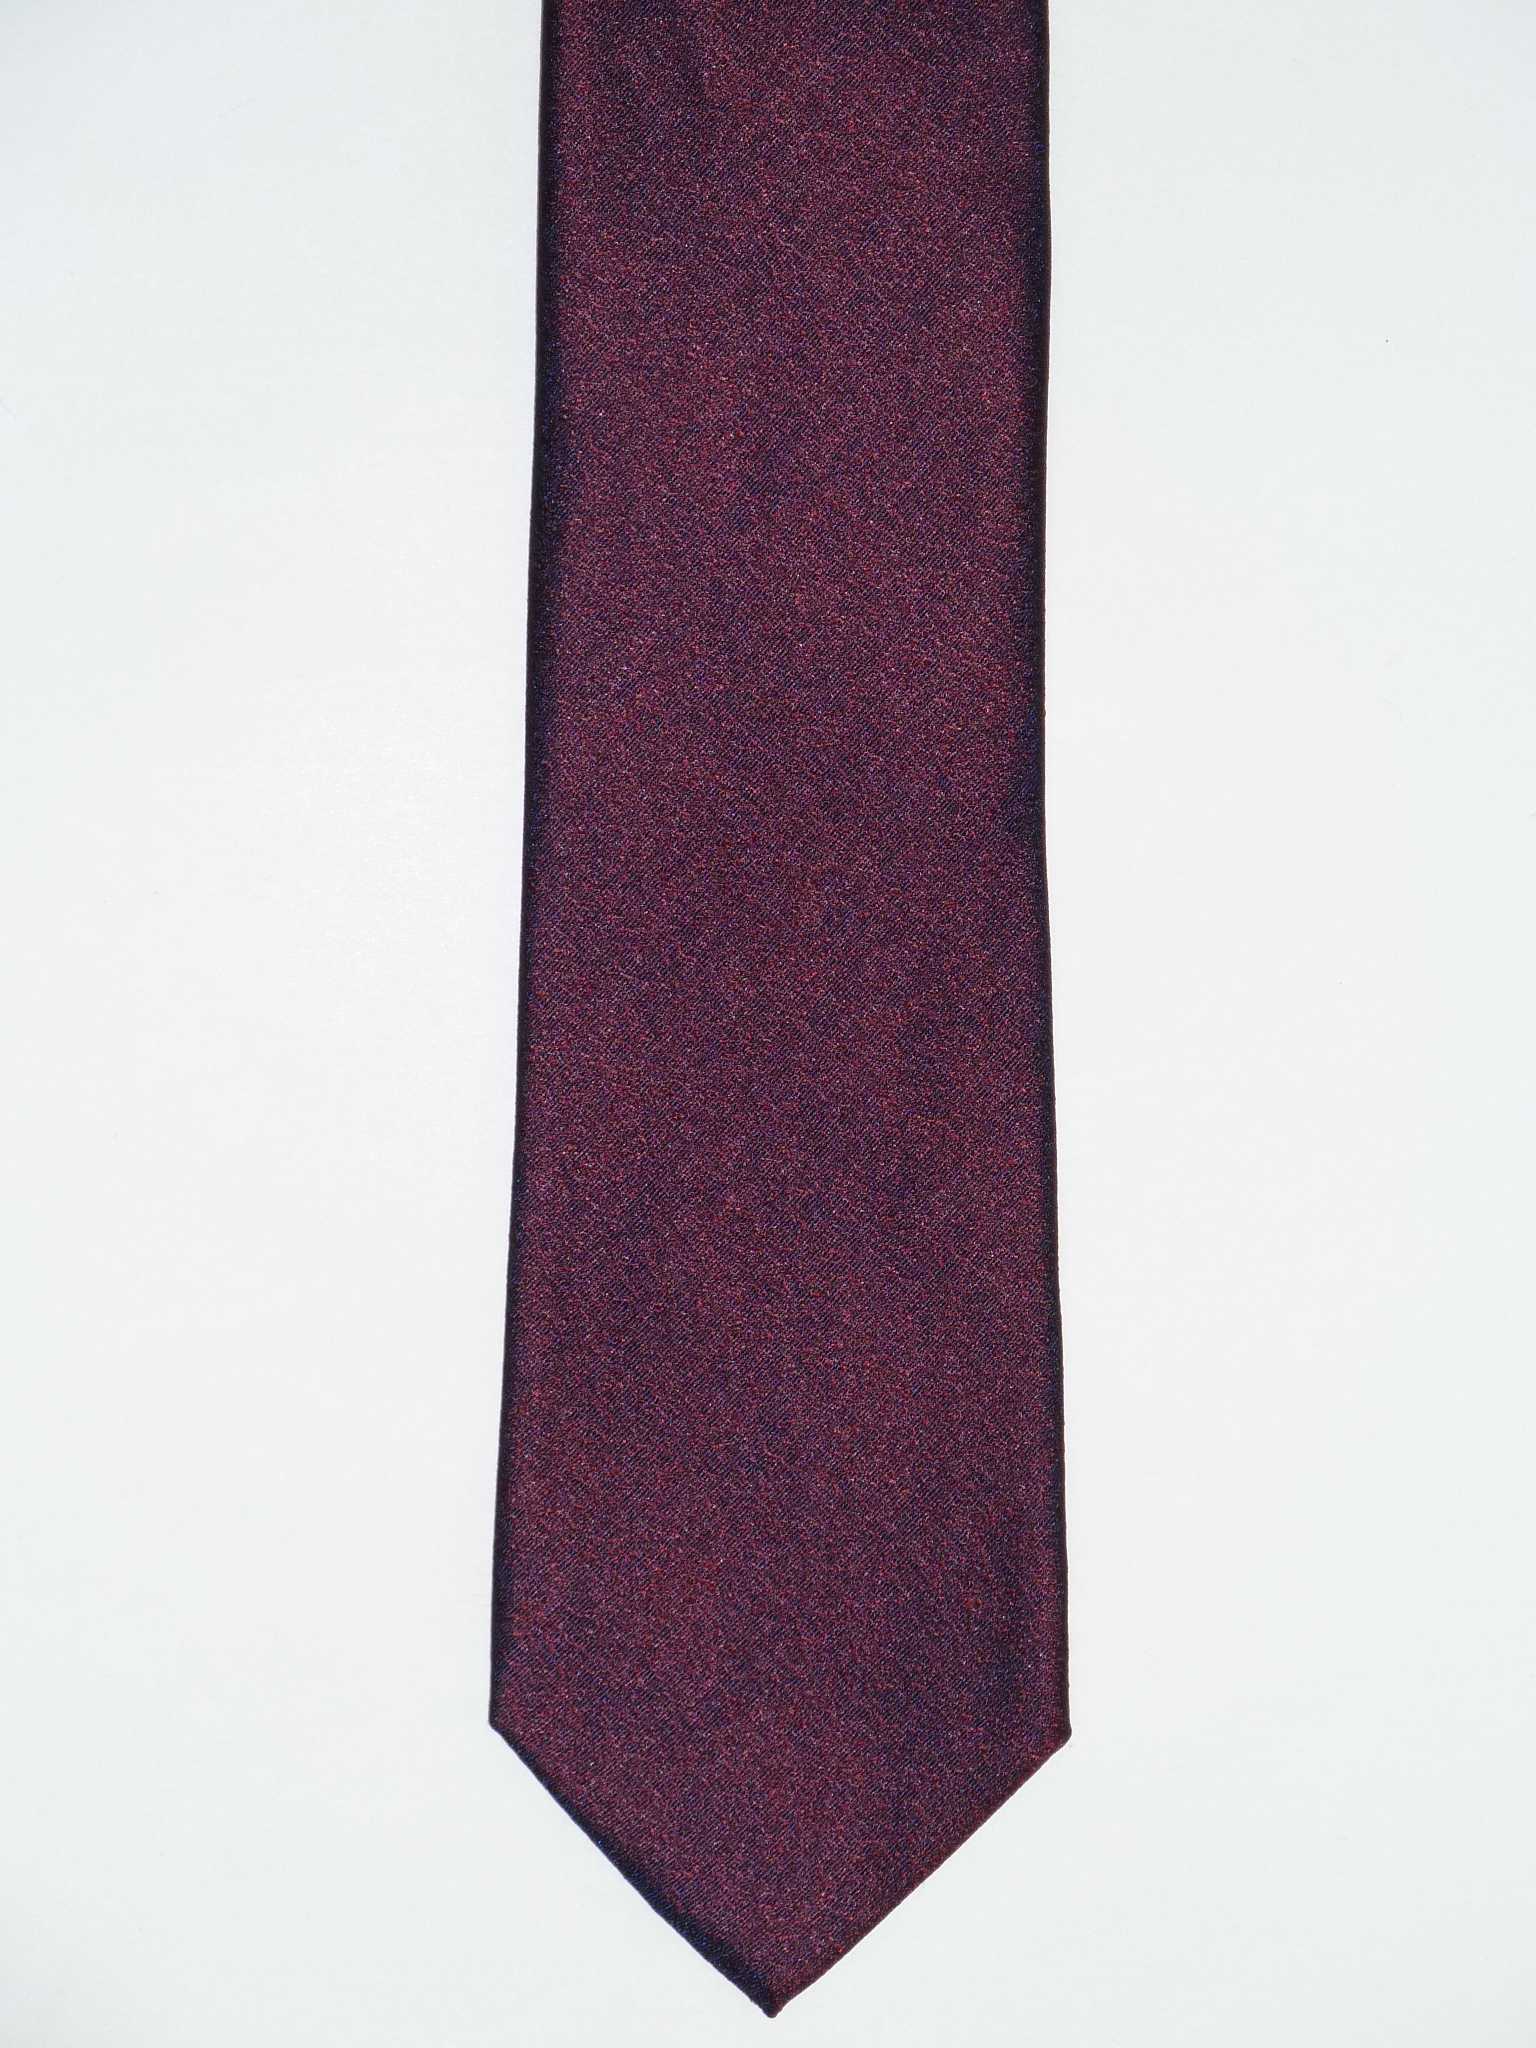 – 7,5cm, 100% Seide, MAICA offene Krawattenfabrik Bordeaux Krawatte, Struktur,